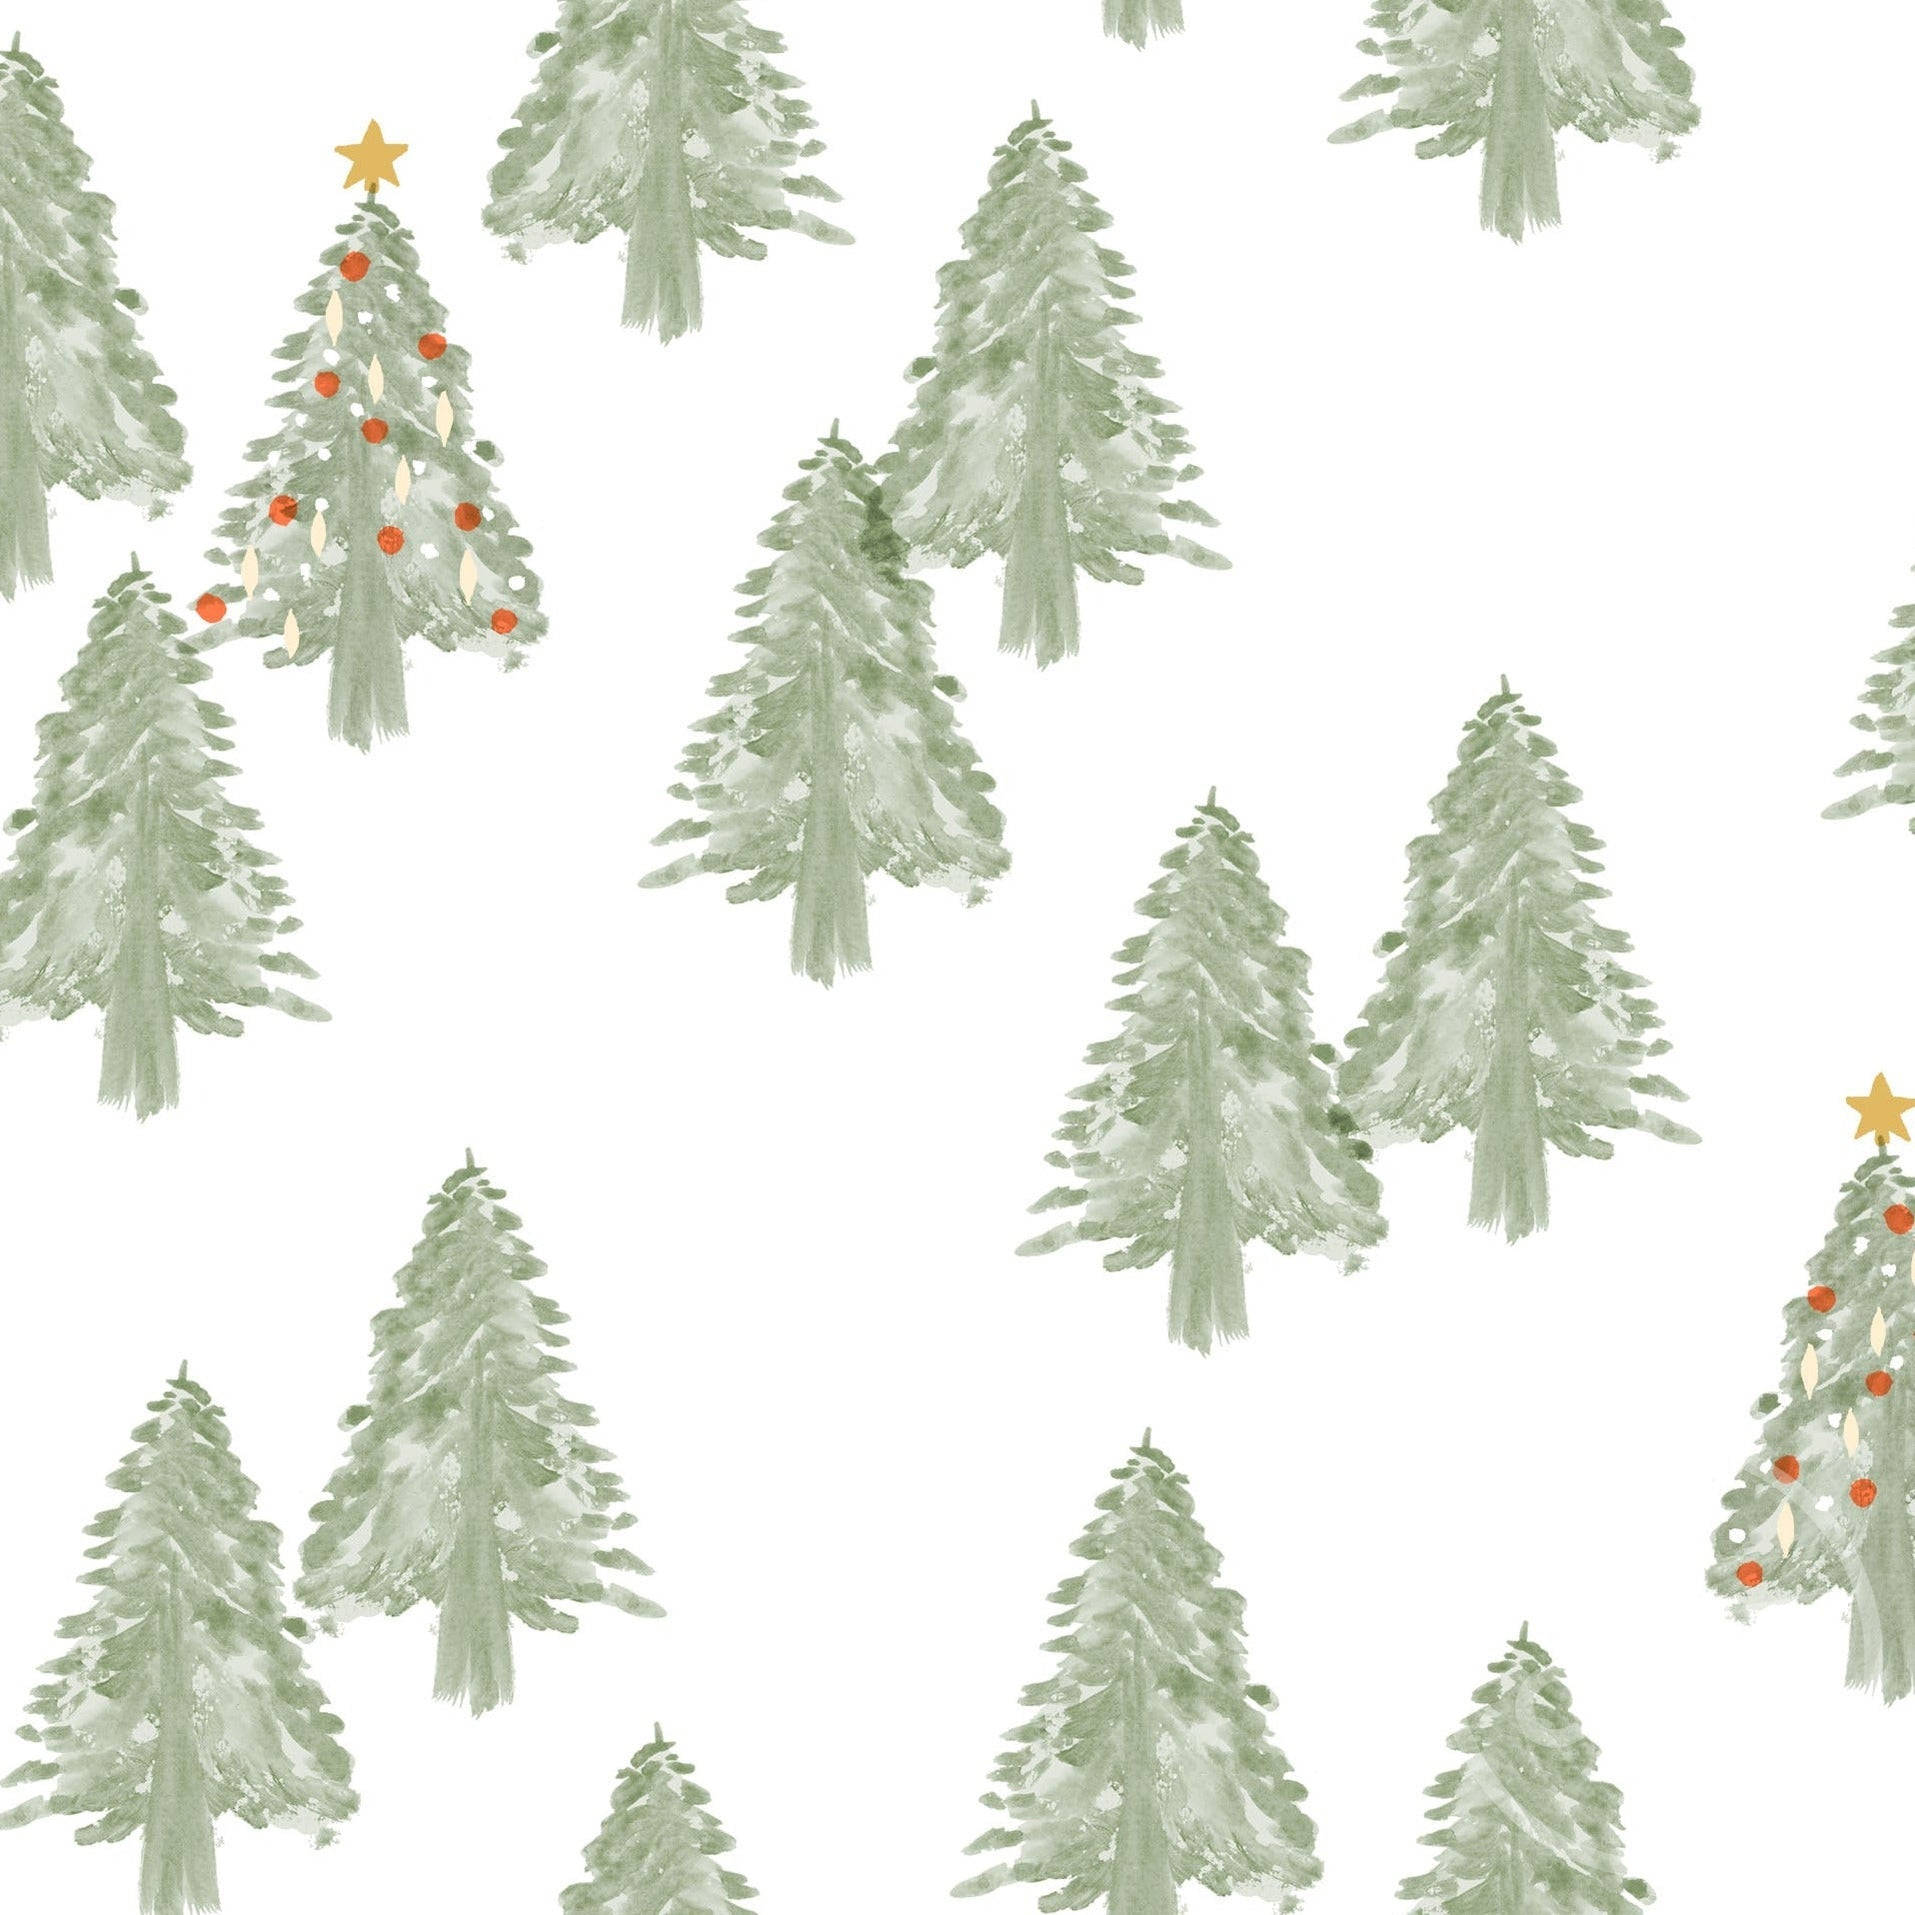 Umaexibição Brilhante De Evergreens Cobertos De Neve Em Uma Floresta Mágica De Natal. Papel de Parede